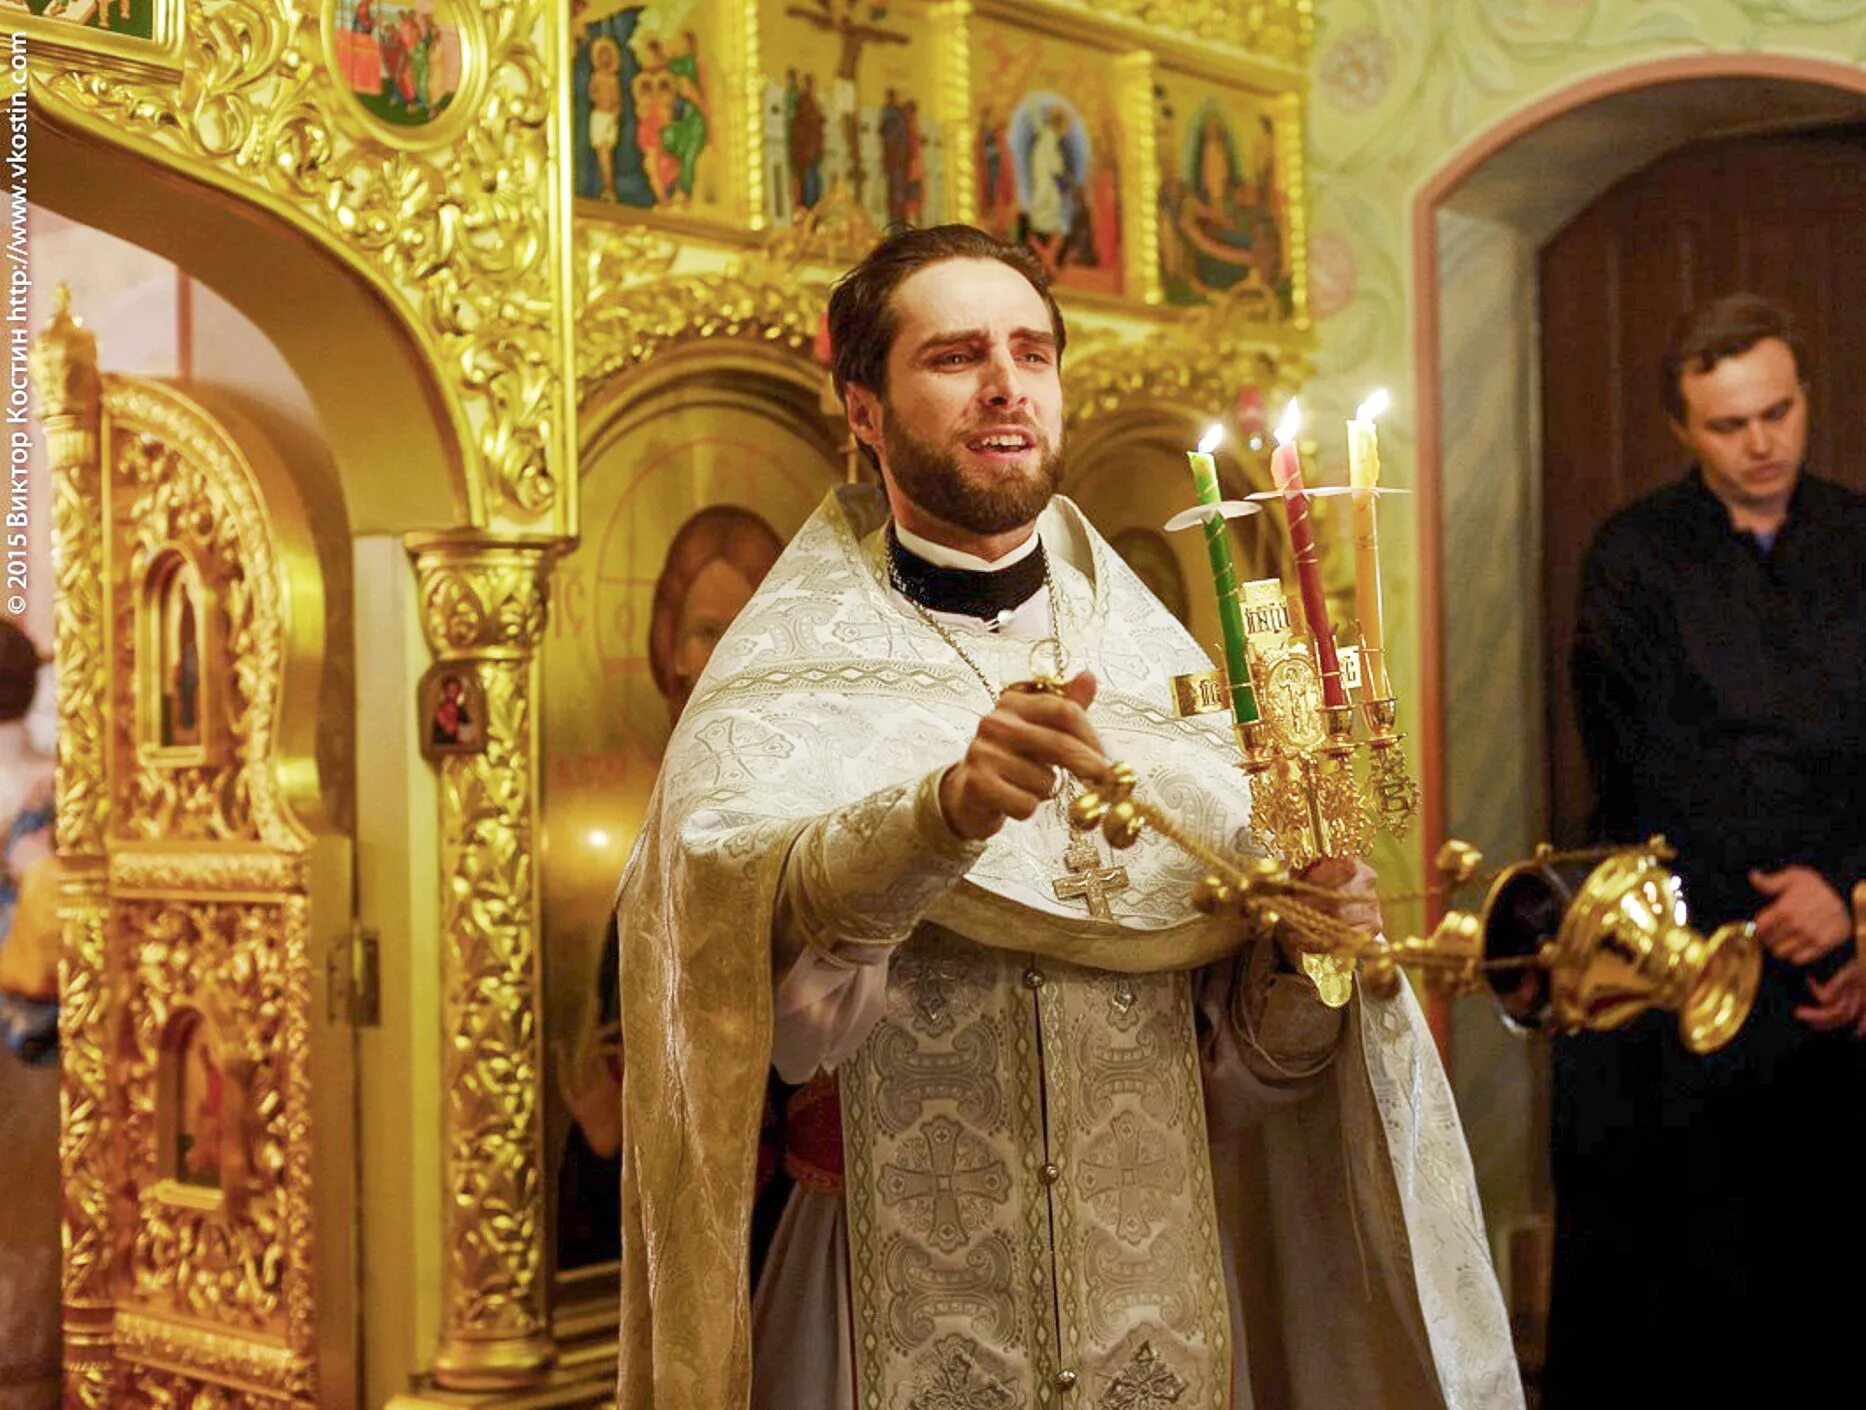 Приход батюшки. Православный священник. Священник в церкви.